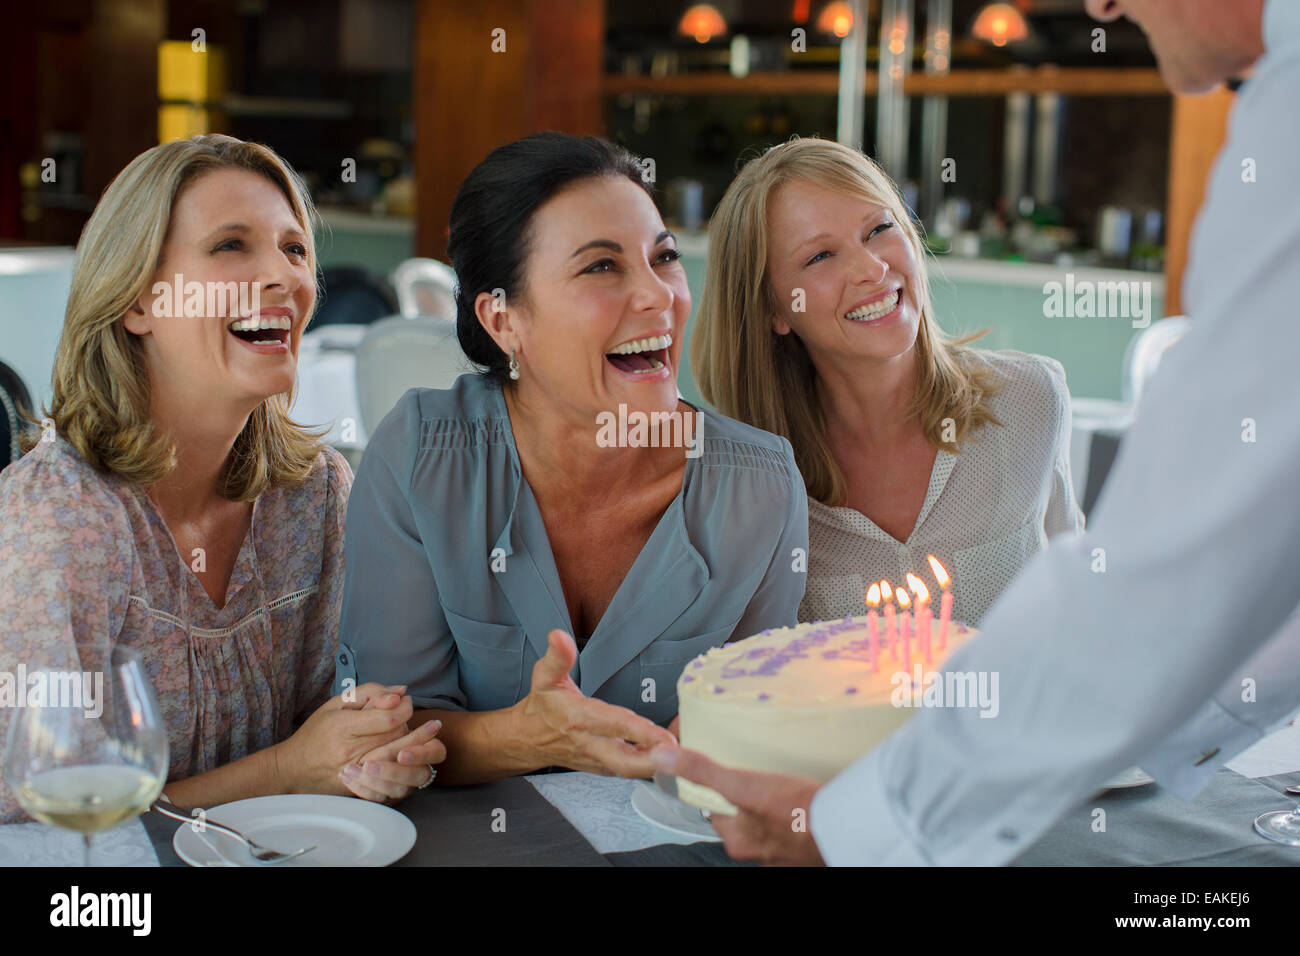 Man handing birthday cake to women Stock Photo